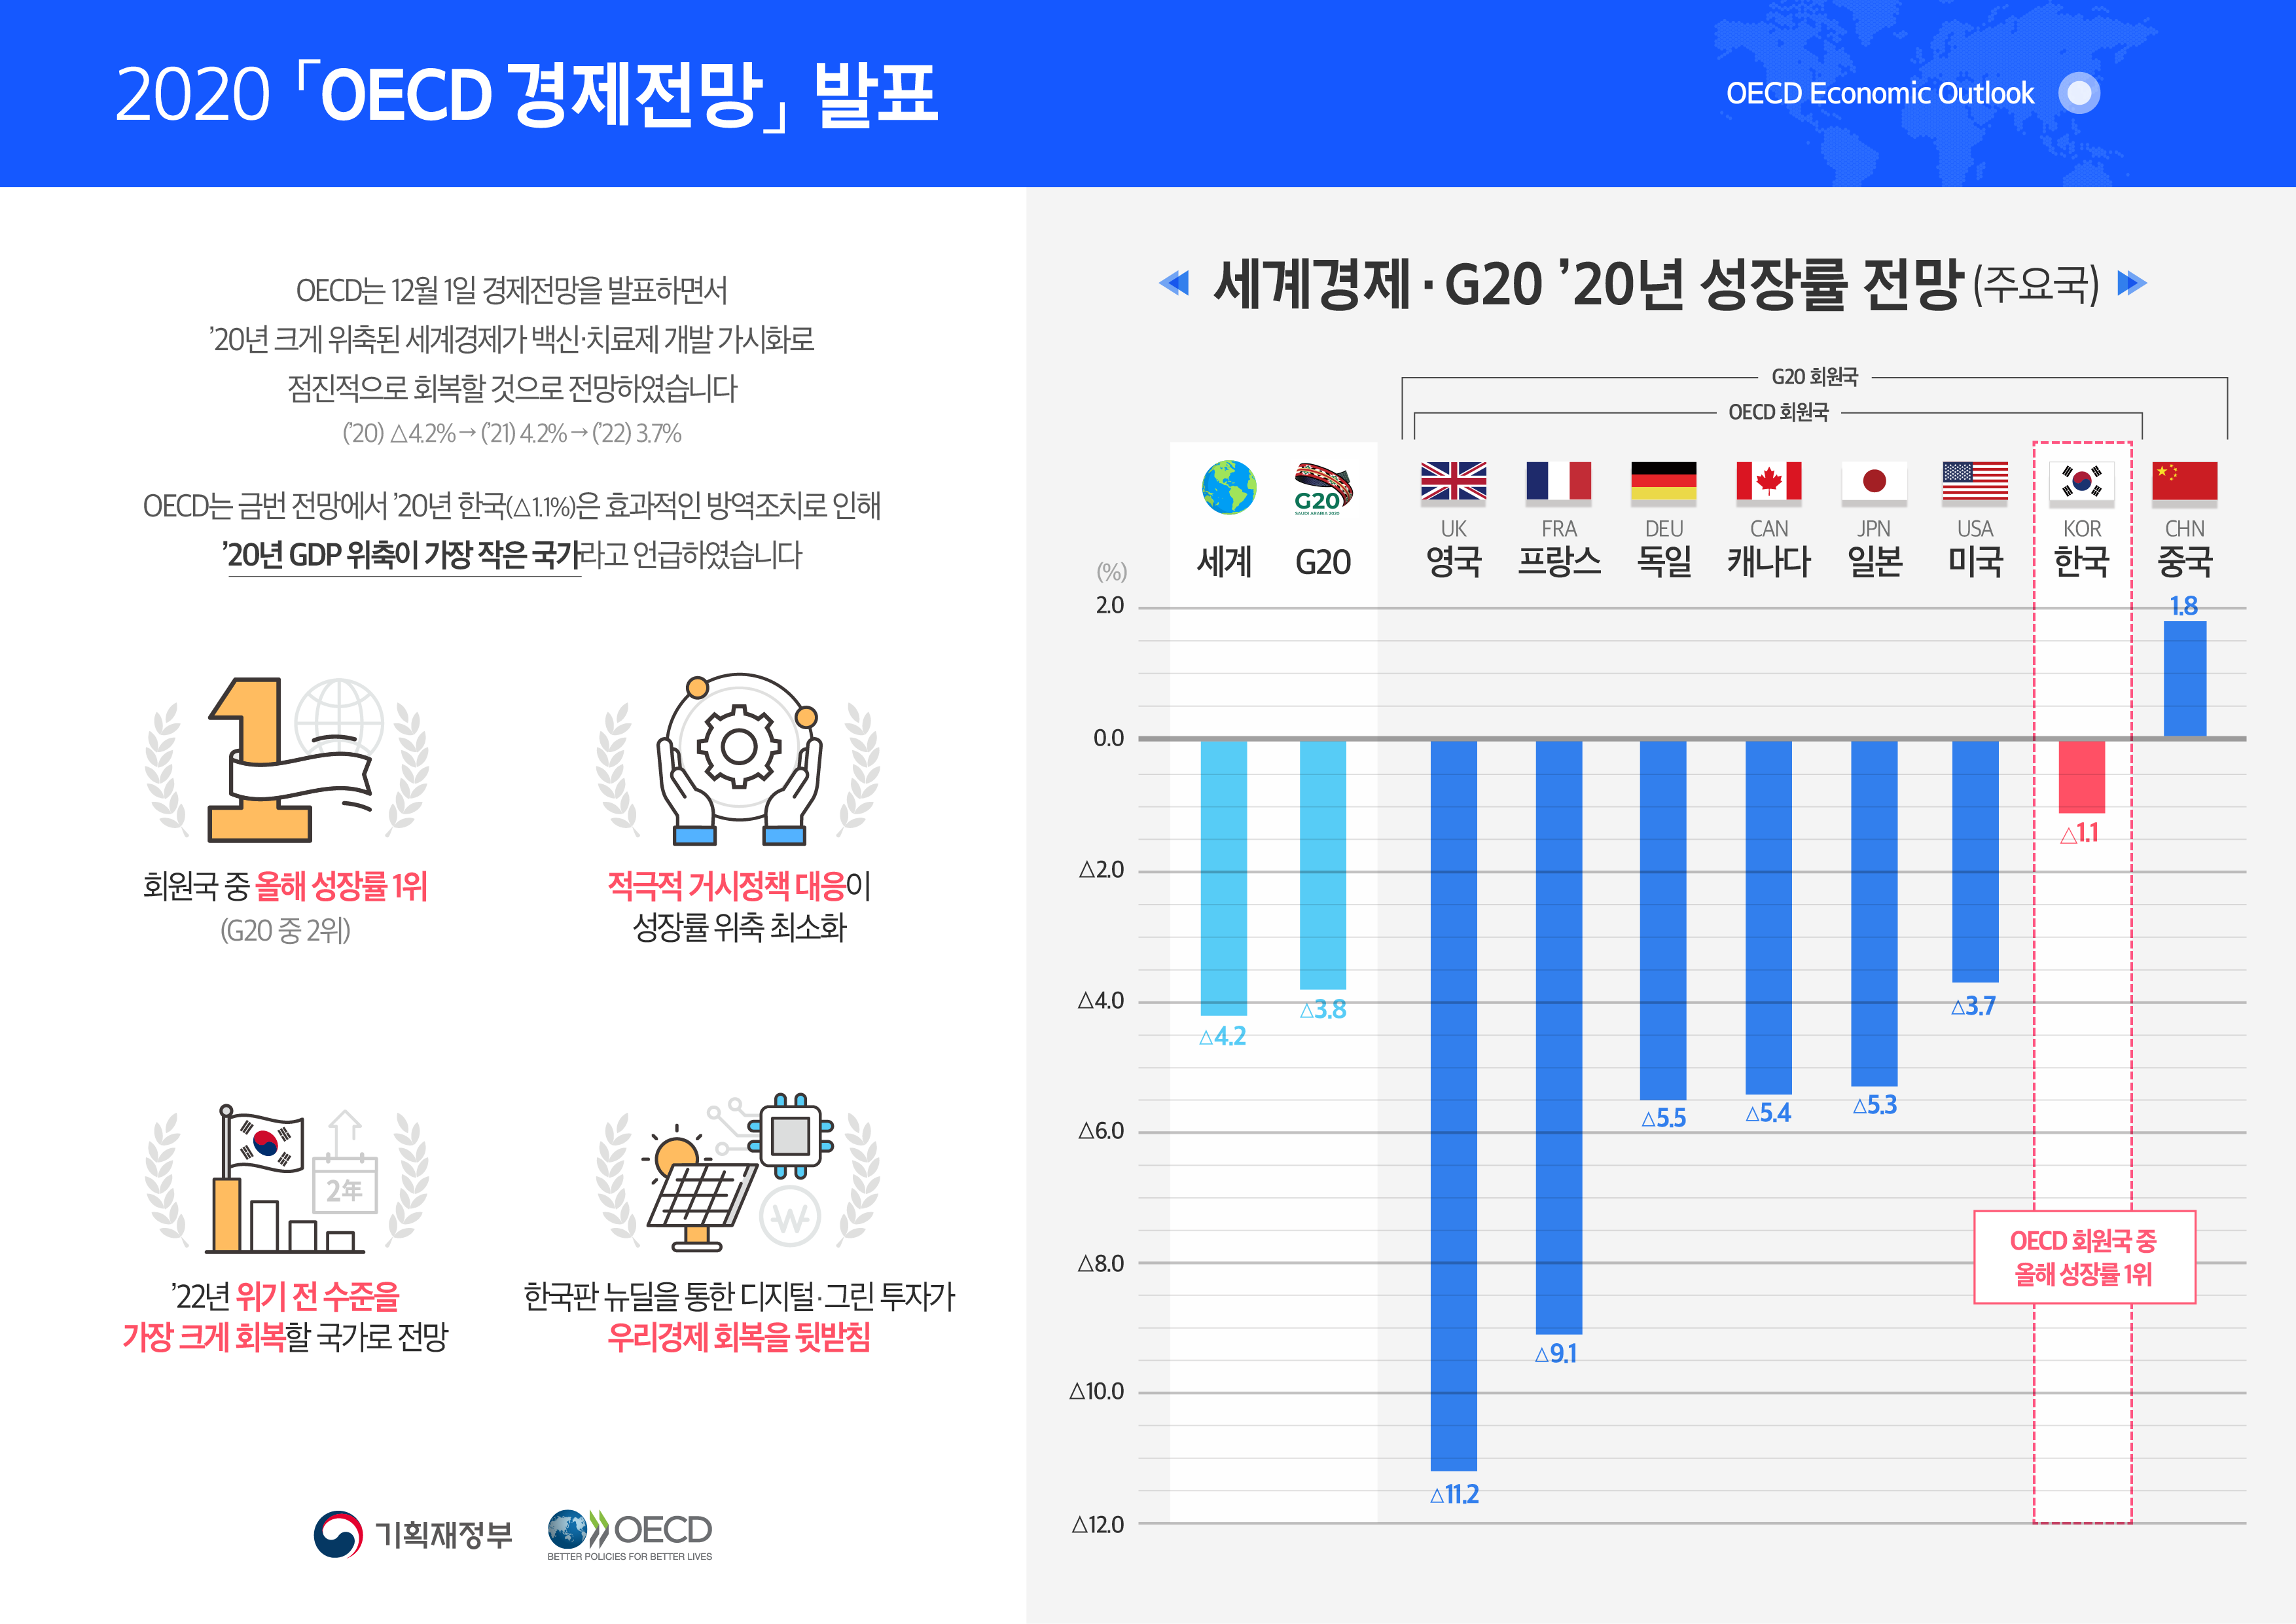 2020 경제협력개발기구(OECD) 경제전망 발표 1}